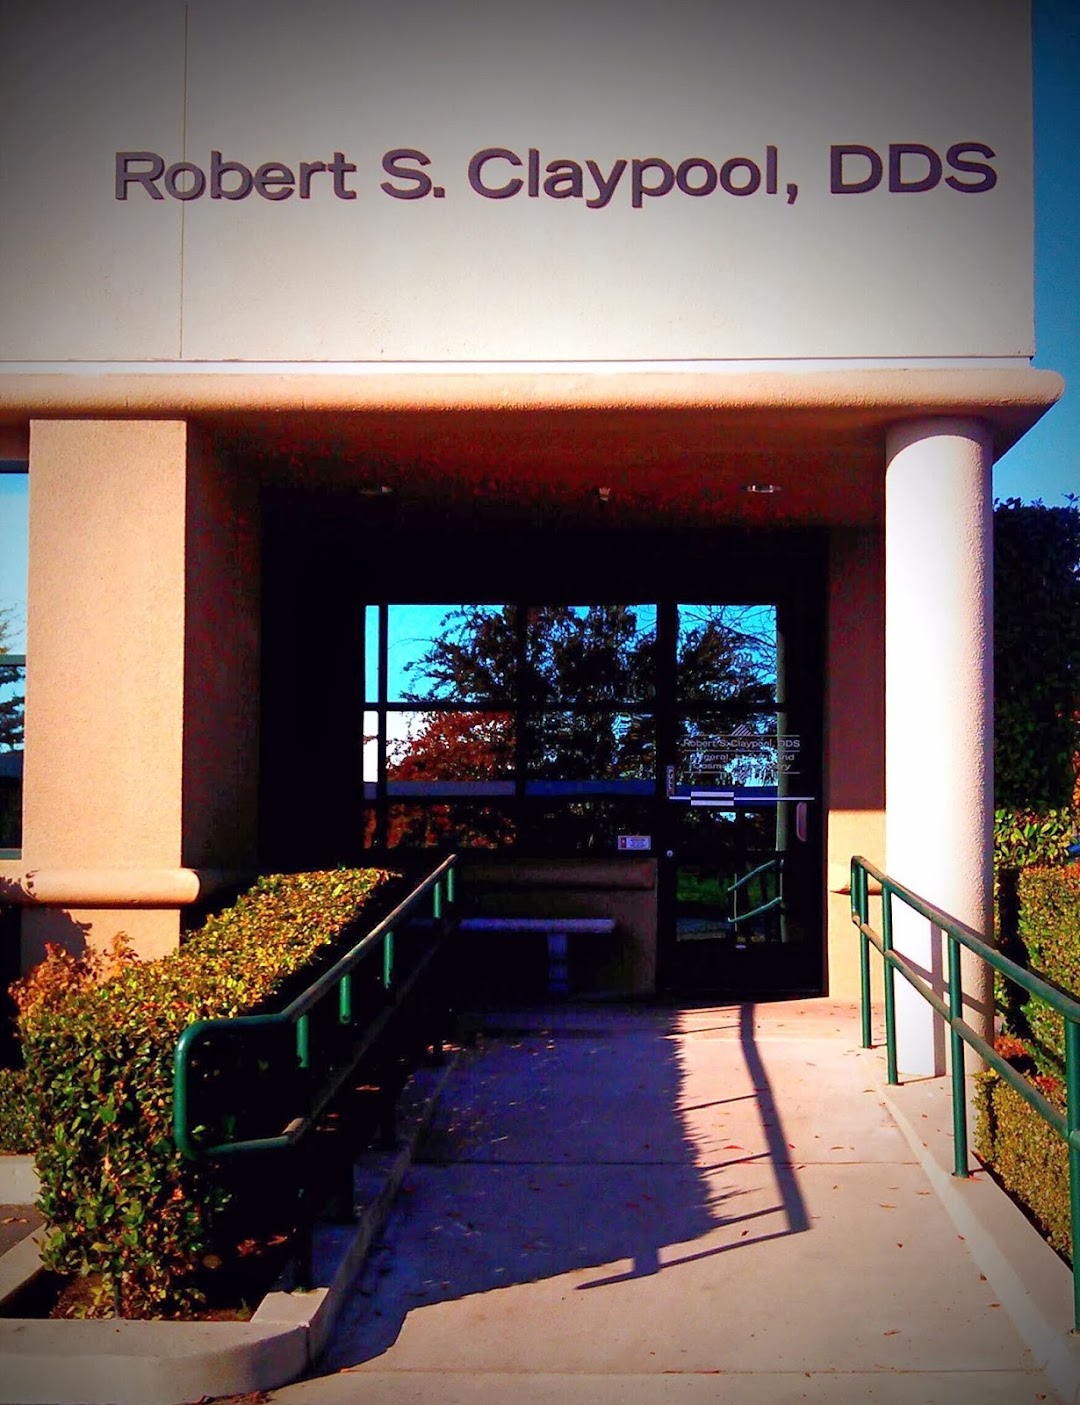 Robert S. Claypool DDS